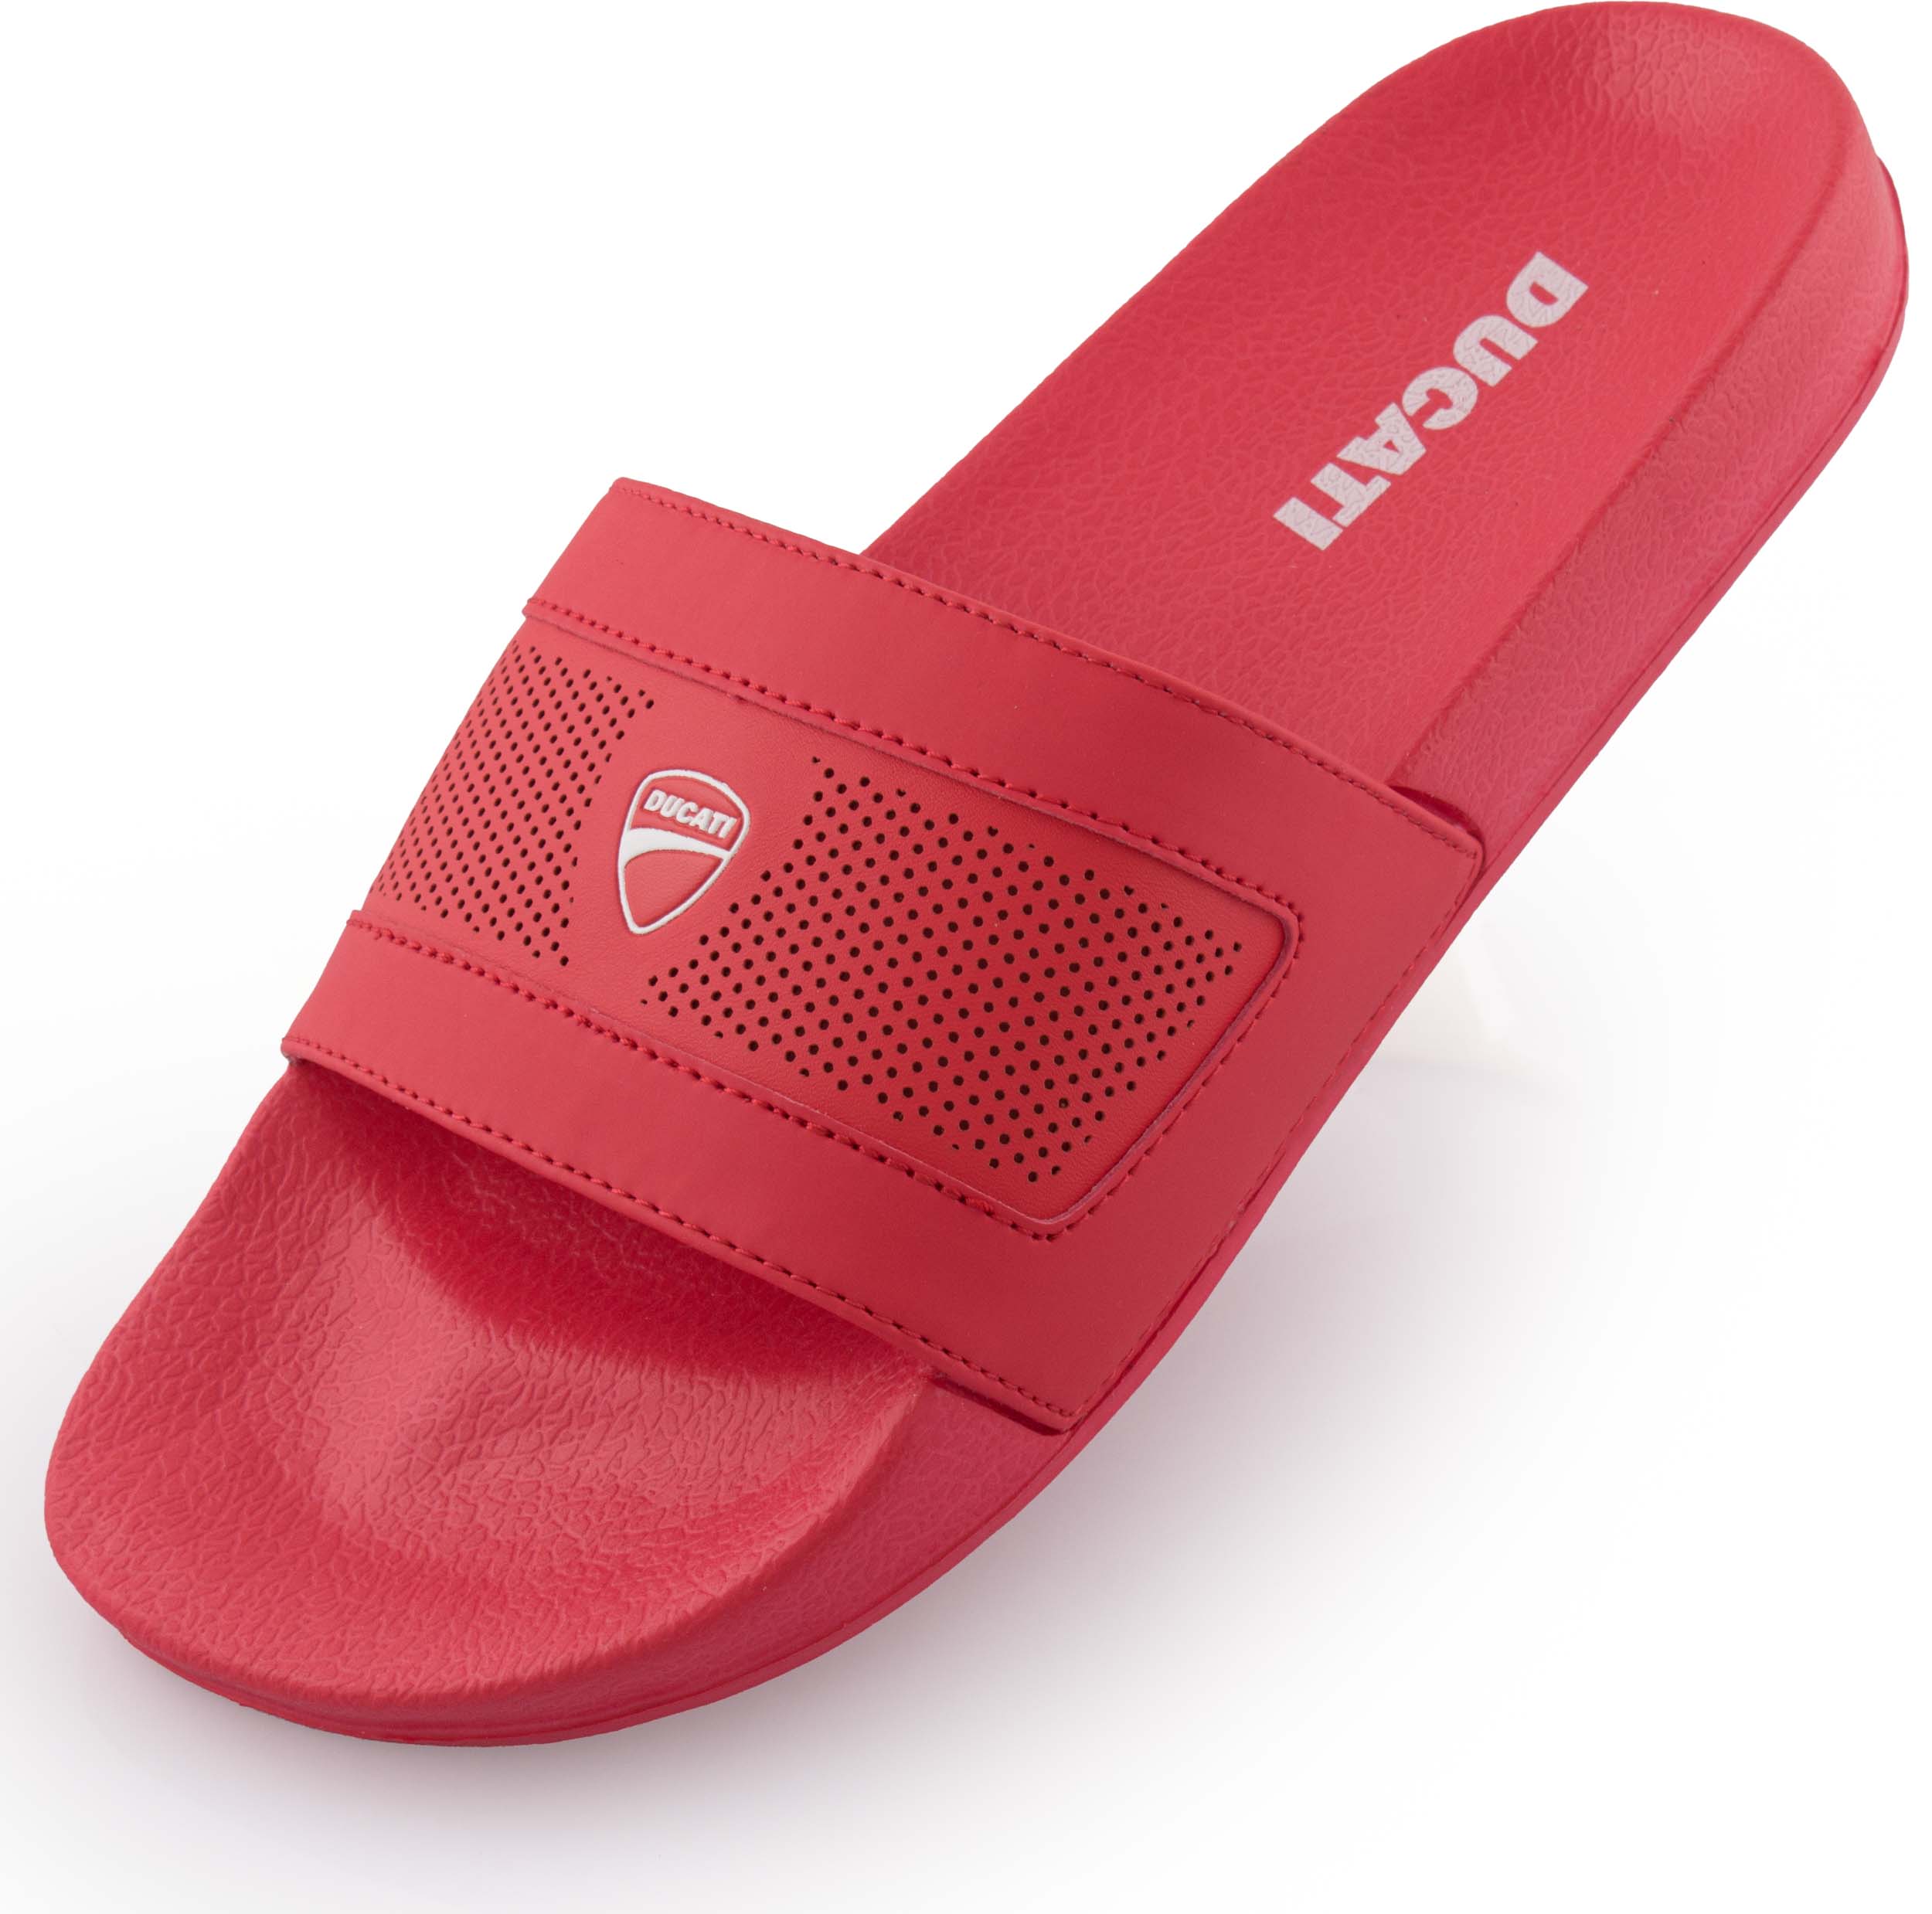 Pantofle Ducati Red|46